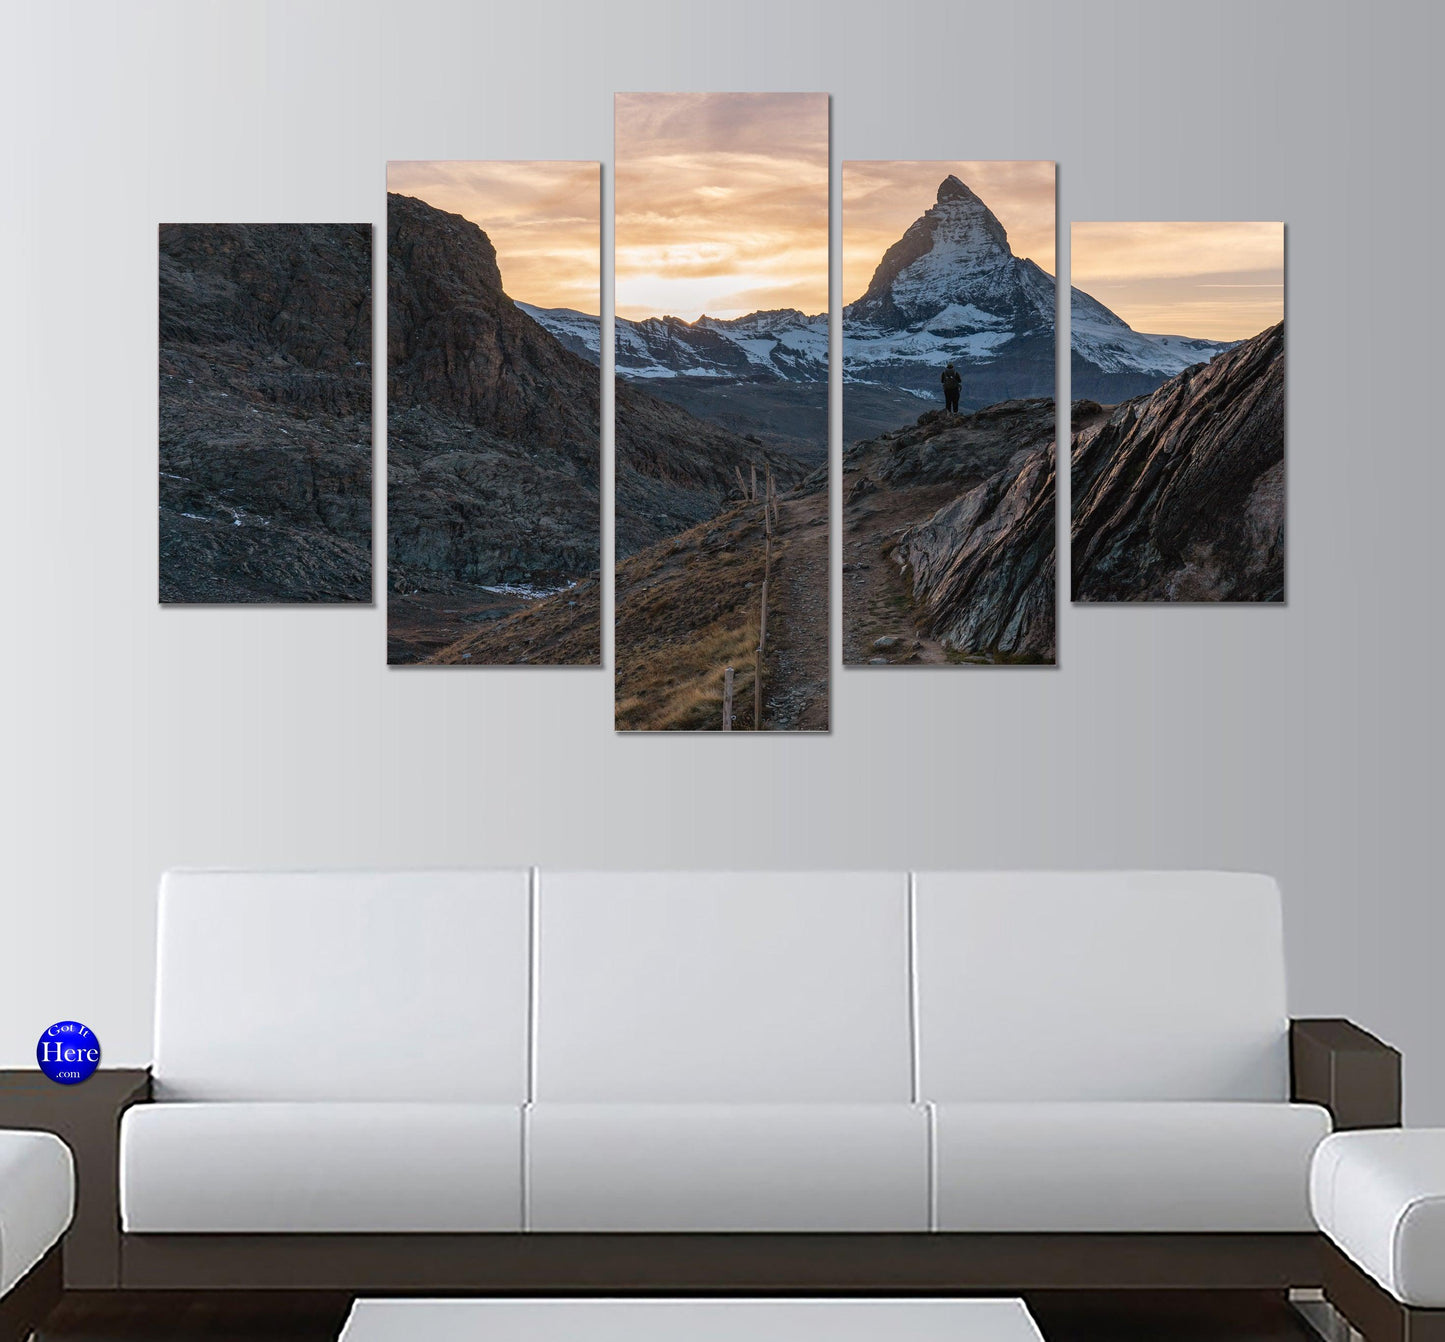 Road To The Matterhorn, Zermatt, Switzerland 5 Panel Canvas Print Wall Art - GotItHere.com